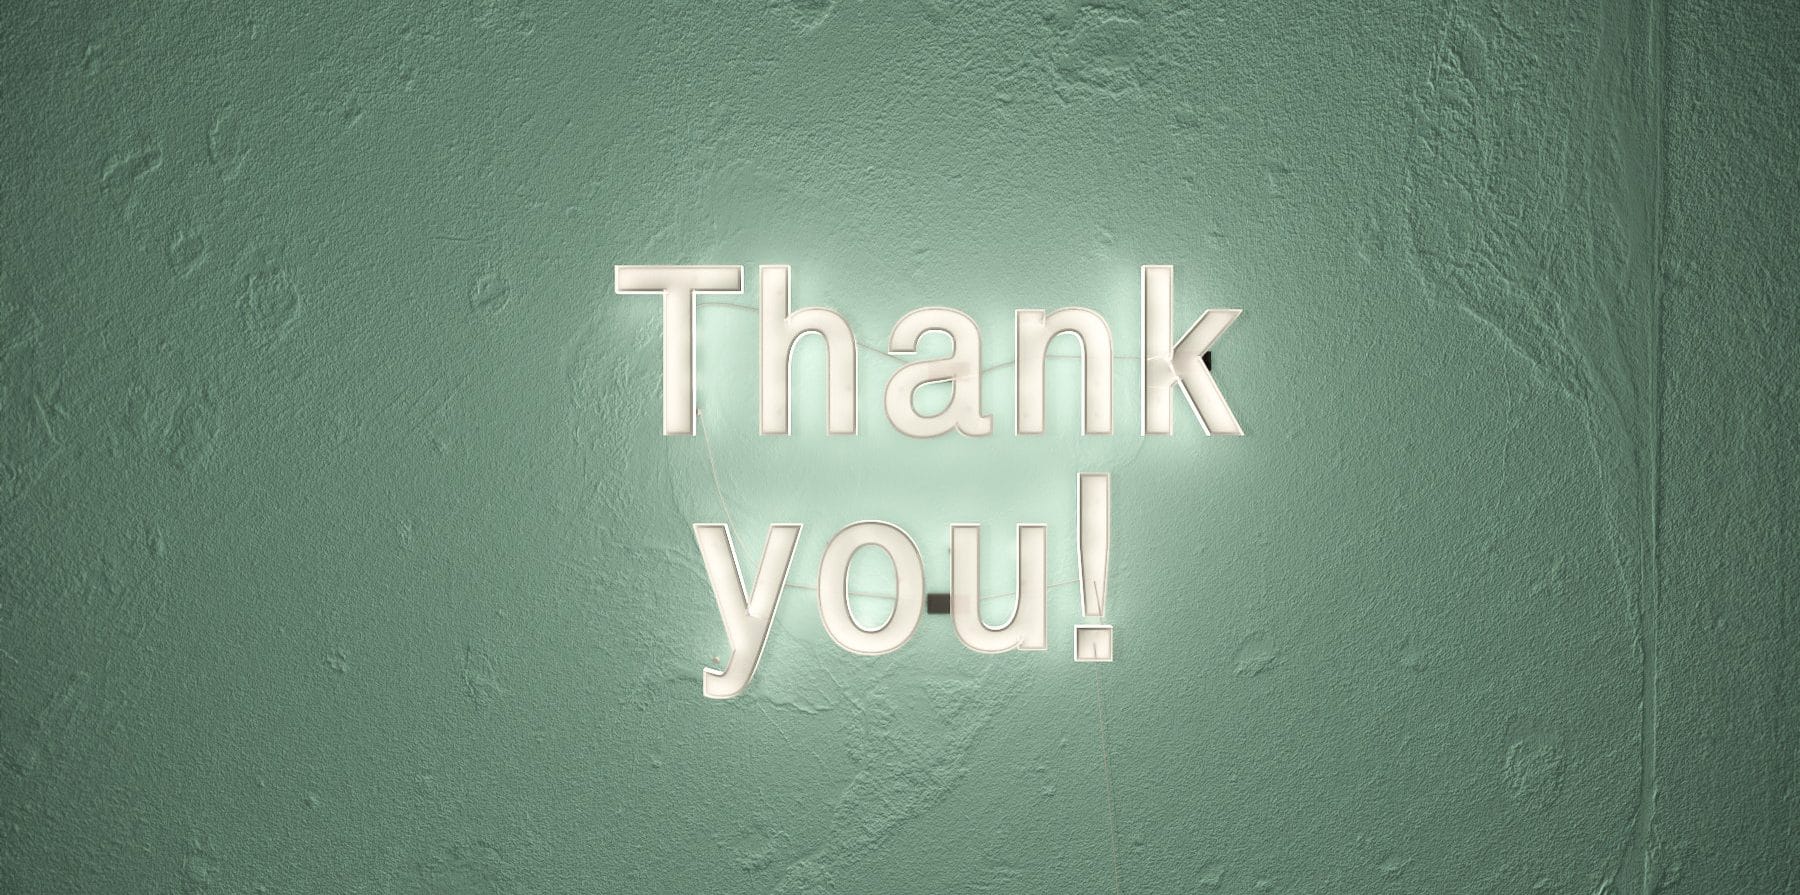 Letreiro escrito "Thank you" com luz de LED em uma parede verde.